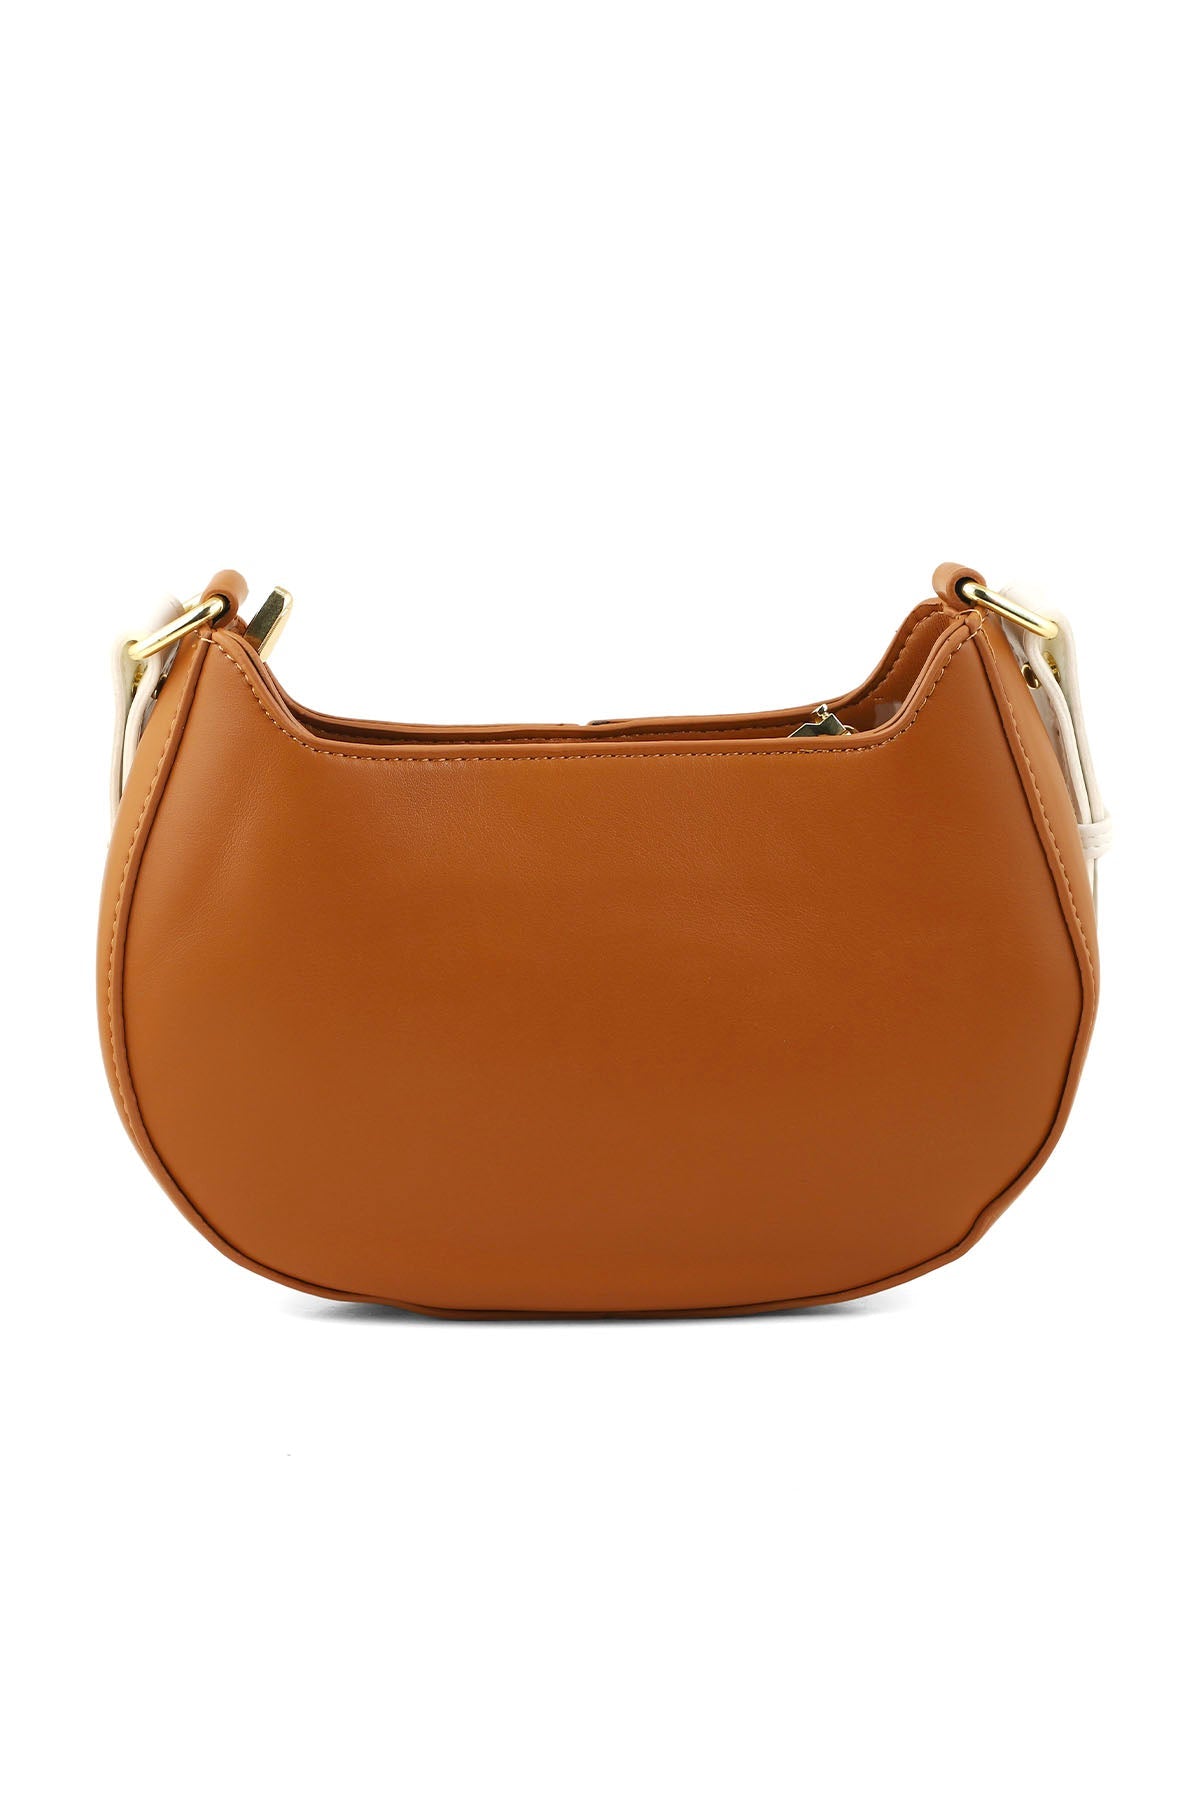 Hobo Hand Bags B14953-Brown